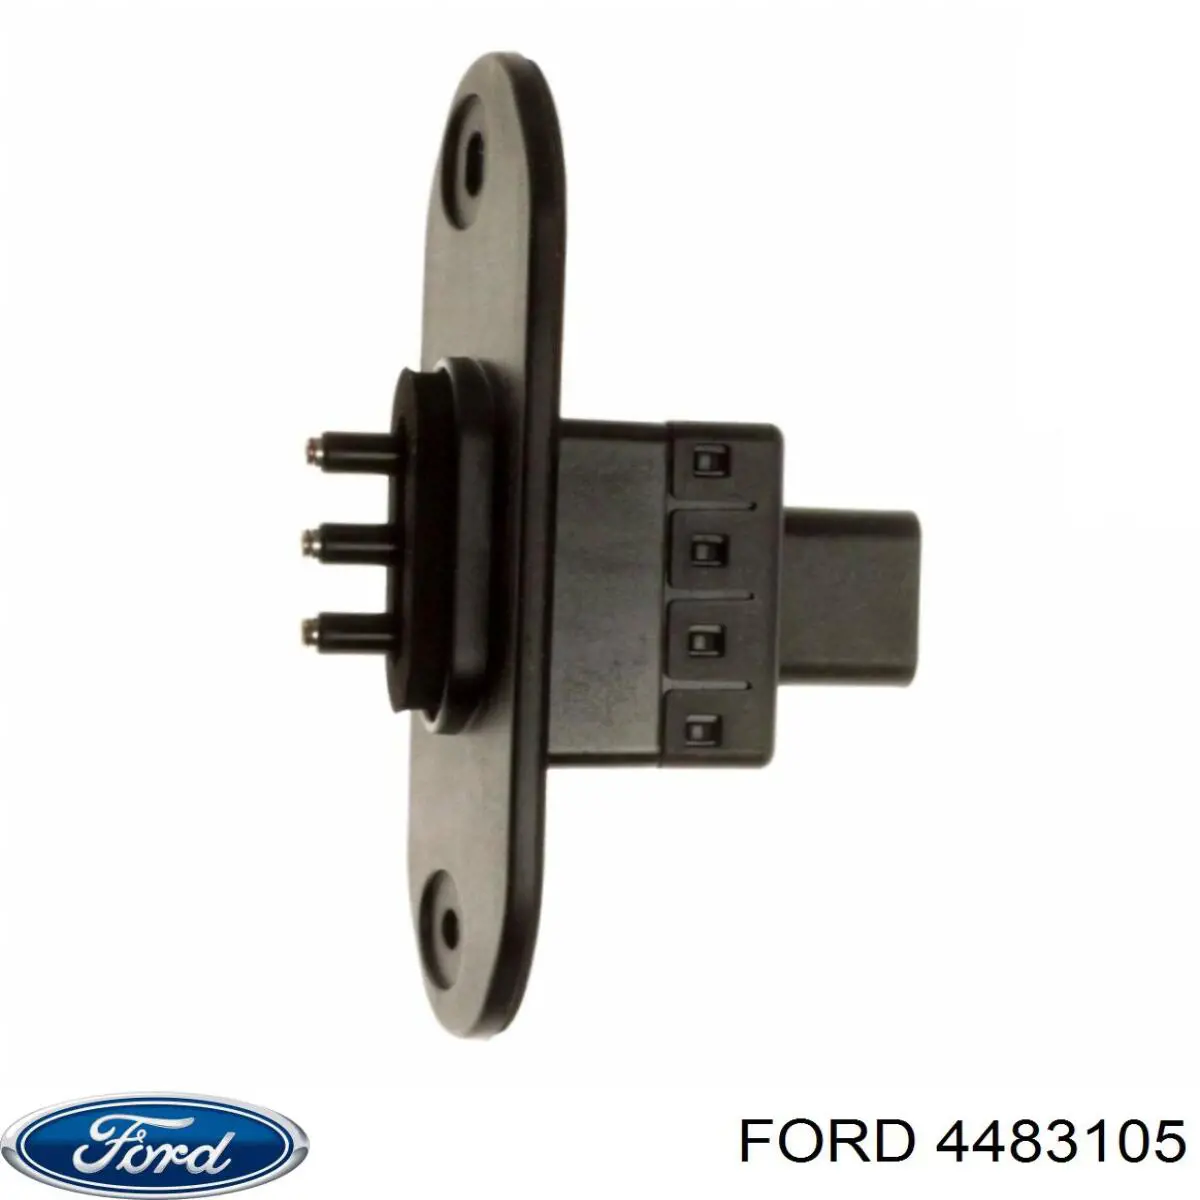 1870259 Ford датчик закрывания дверей (концевой выключатель, сдвижной двери, на кузове)